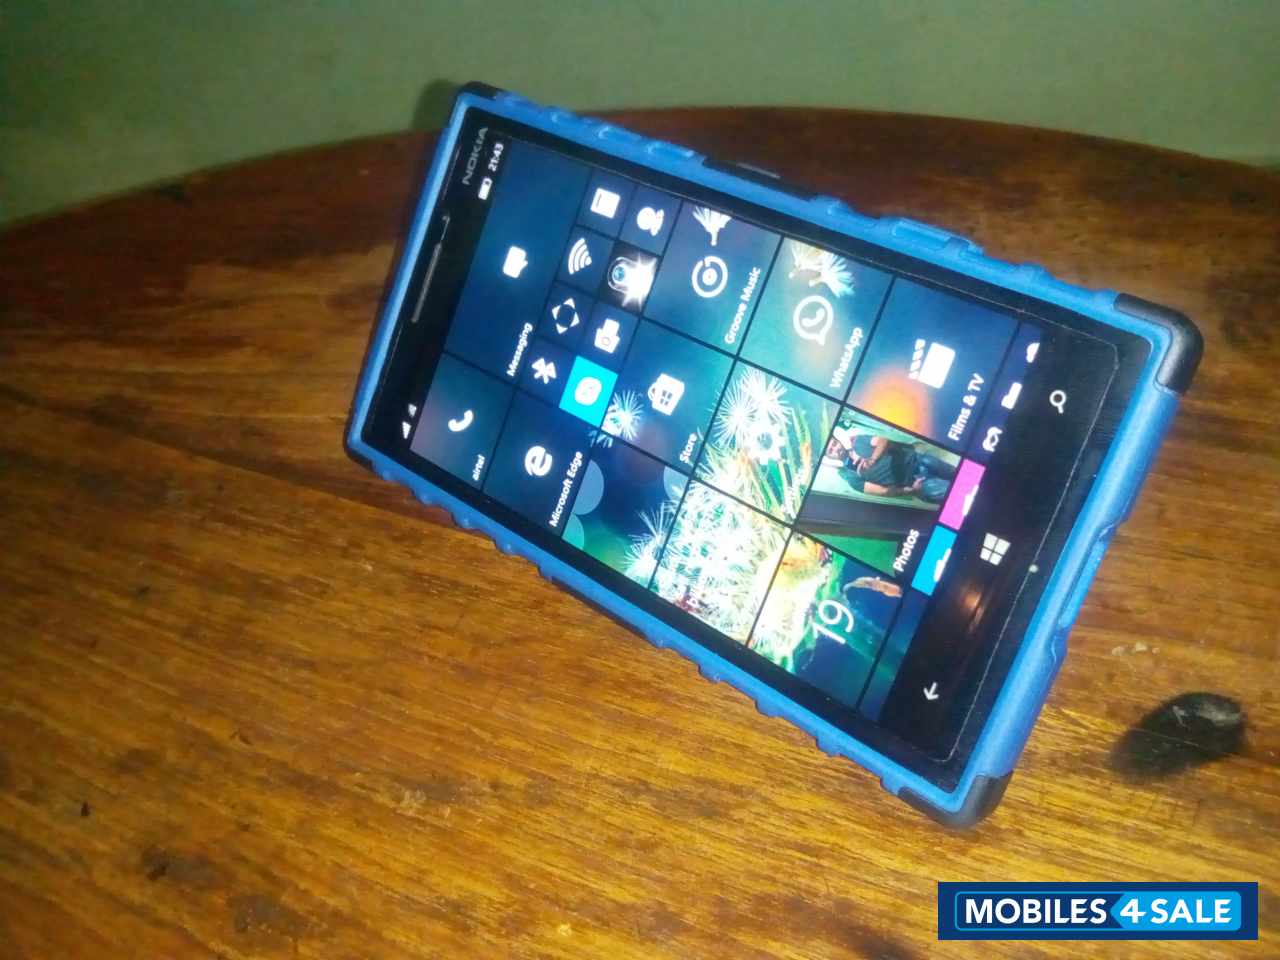 Black Nokia Lumia 930